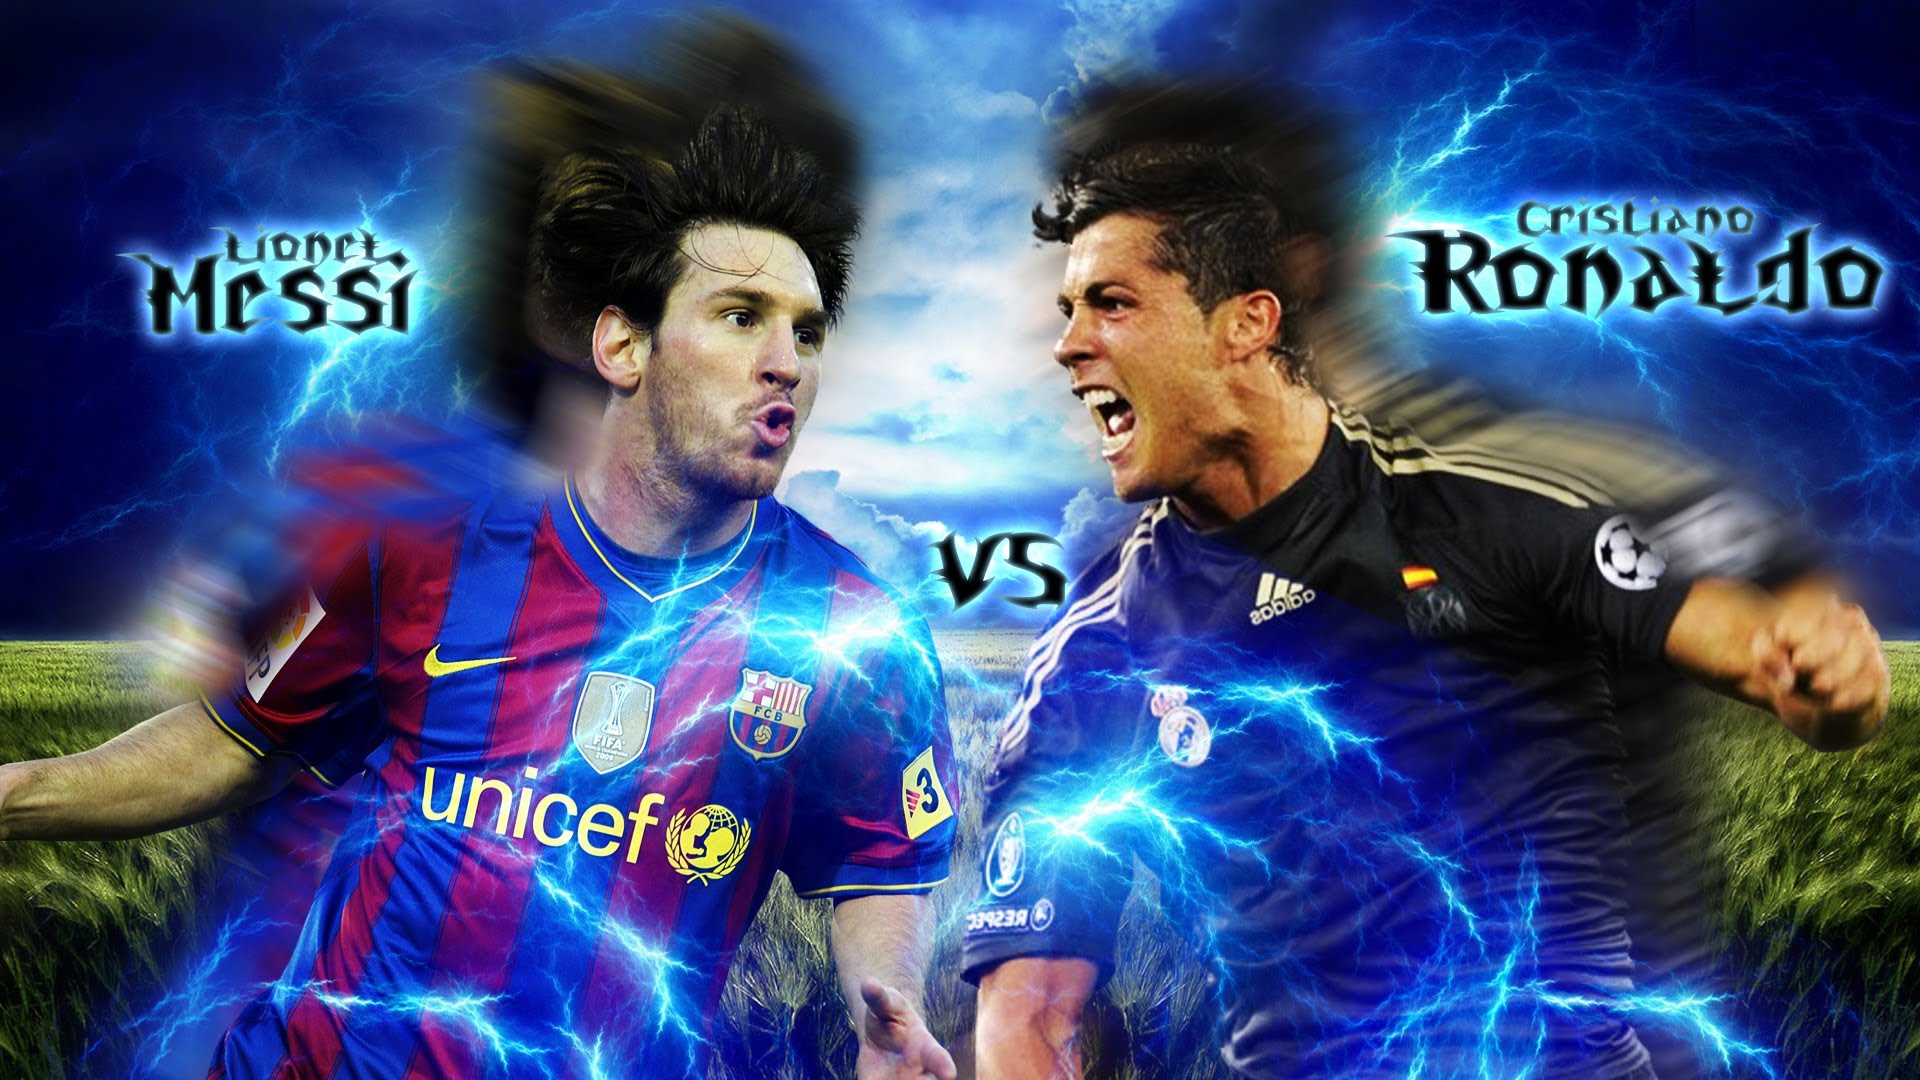 Trận đấu không bao giờ tẻ nhạt giữa Messi và Ronaldo. Đây là cuộc đối đầu của hai huyền thoại số một trong lịch sử bóng đá. Xem và so sánh khả năng của hai ngôi sao này để lựa chọn người mà bạn tôn trọng hơn.